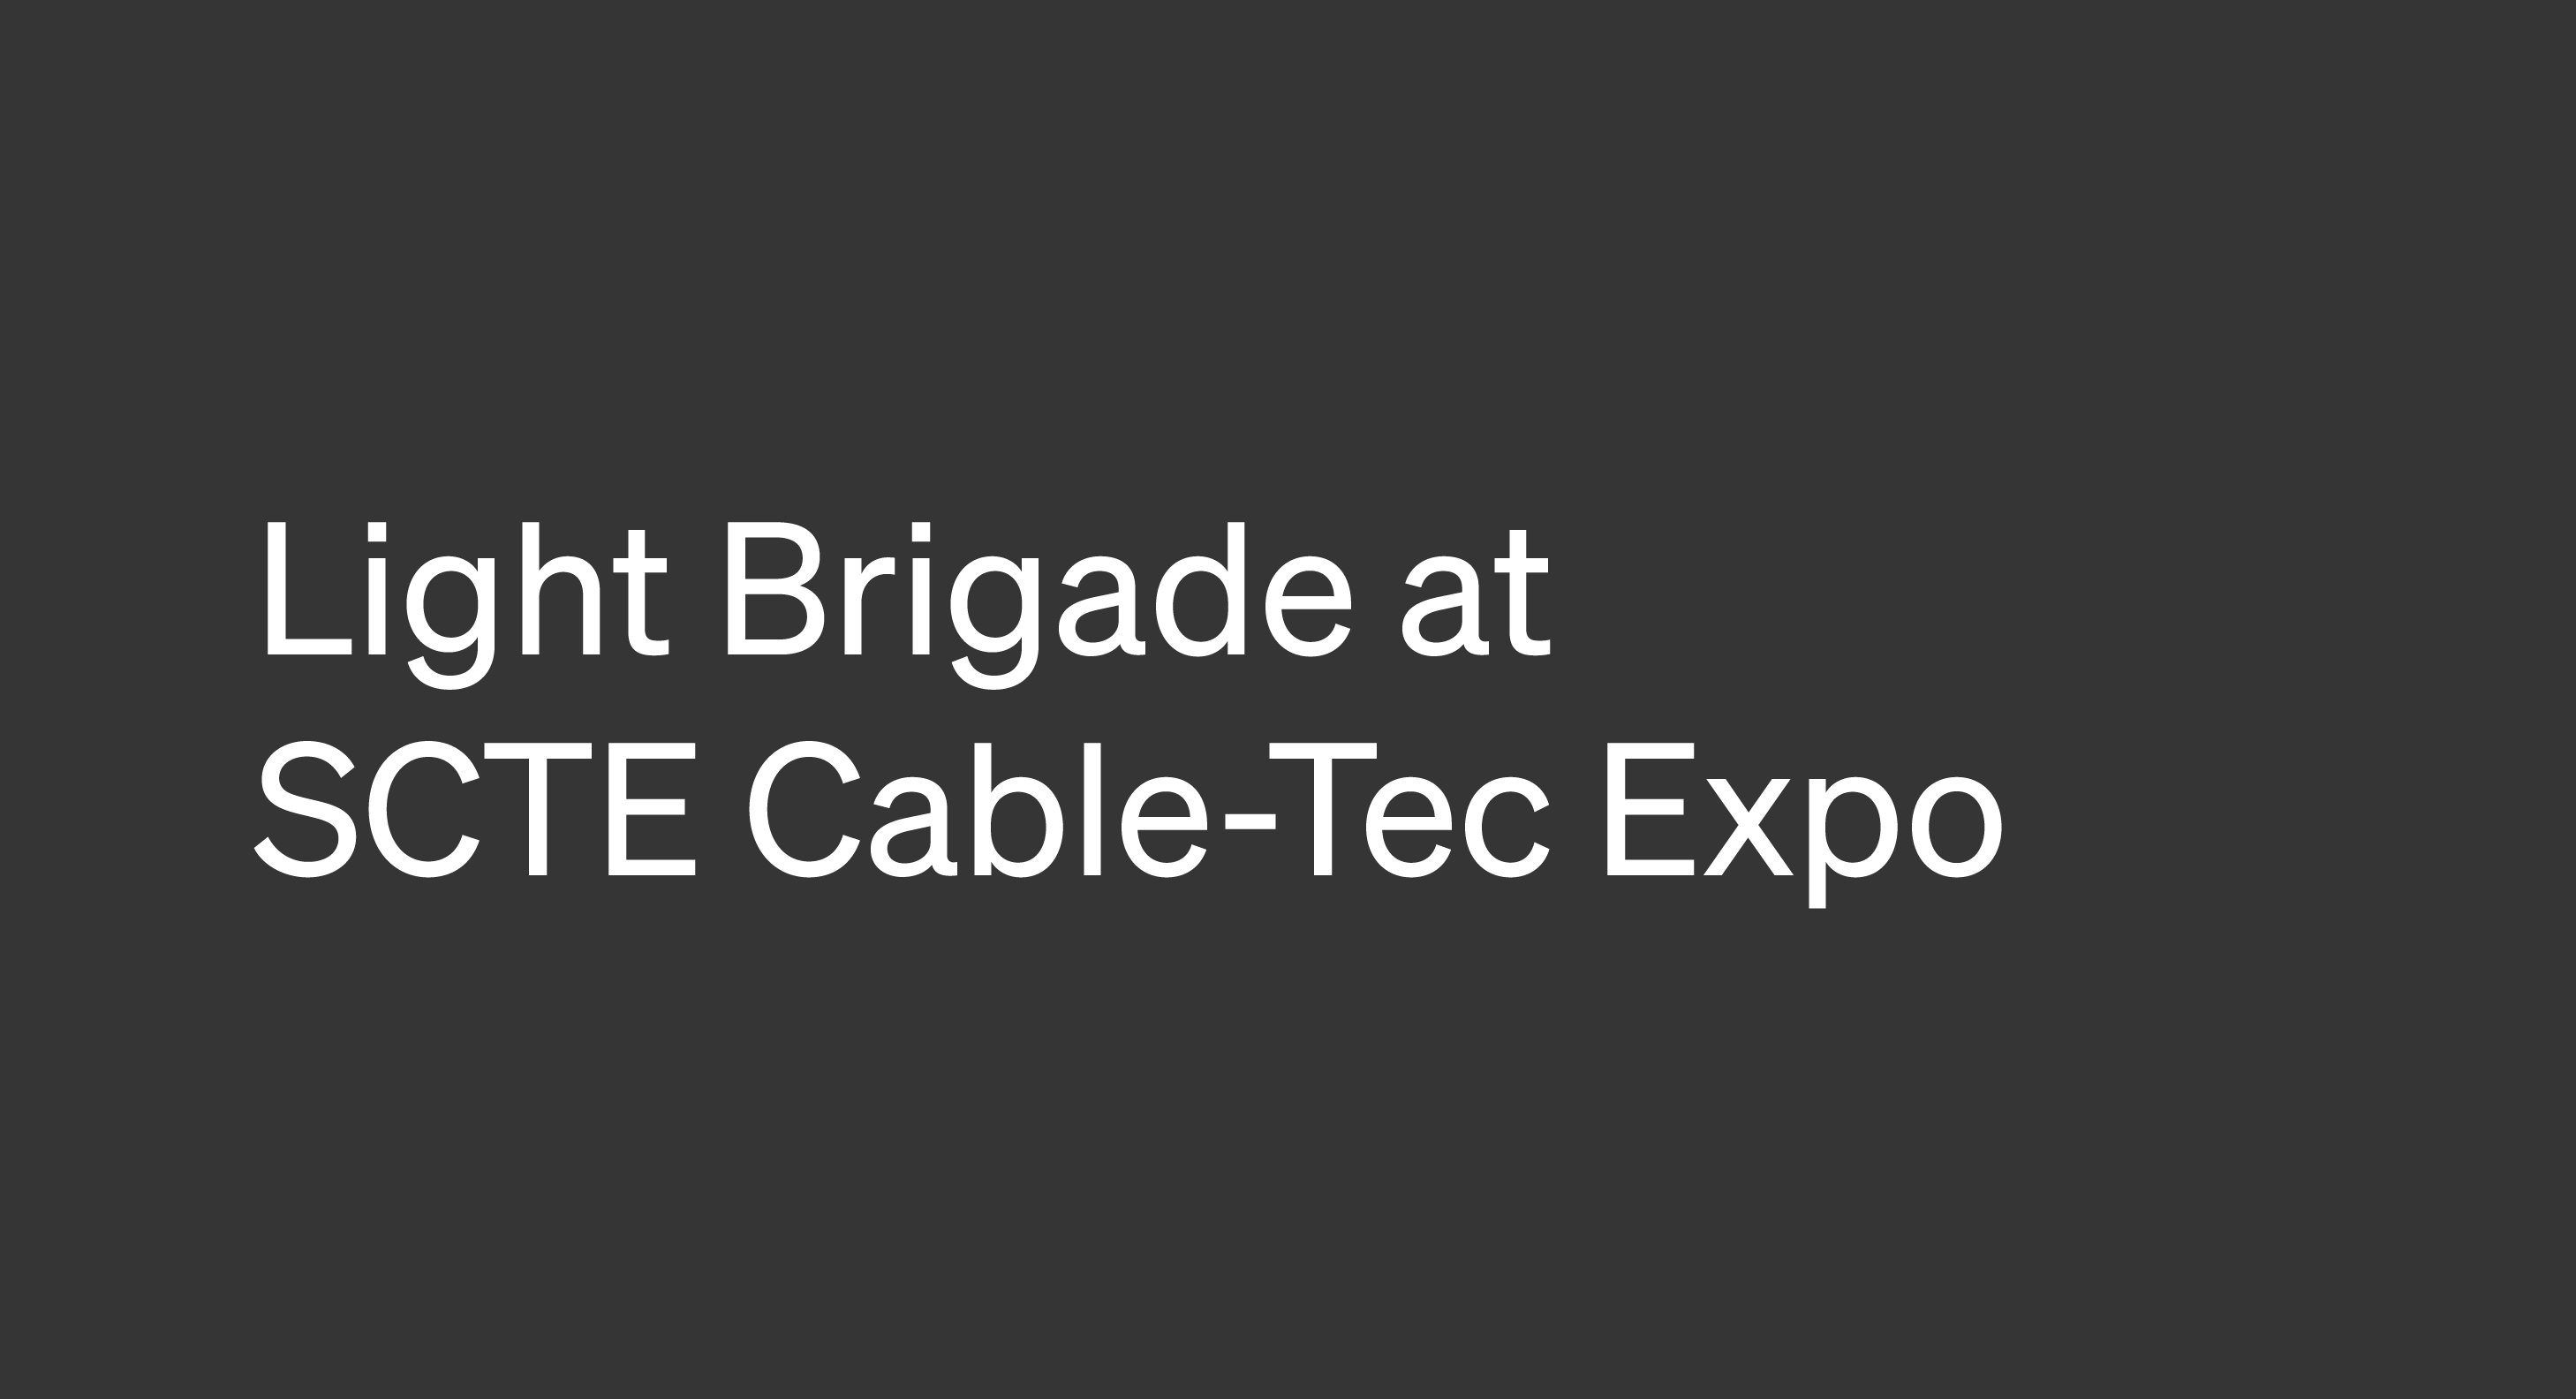 SCTE Cable-Tec Expo